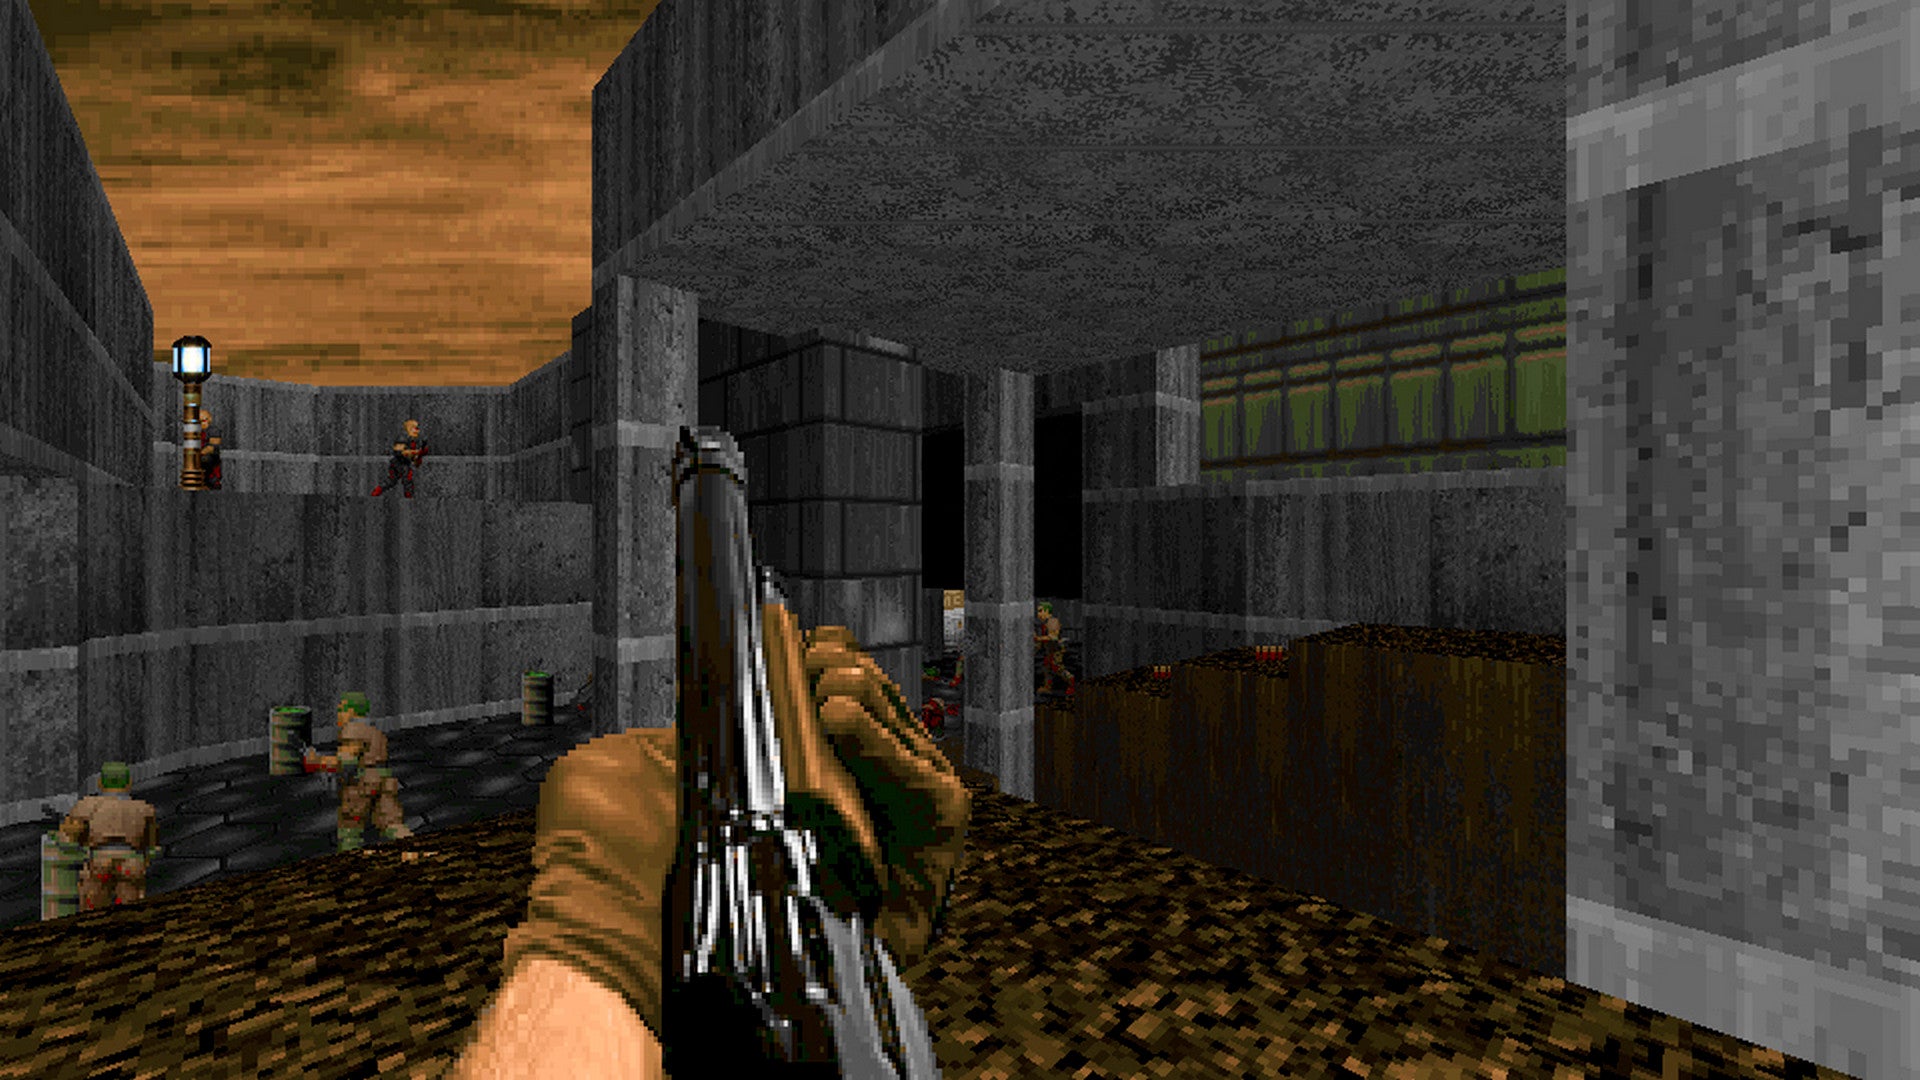 Bilder zu Arrival ist ein kostenloses neues Add-On für Doom und Doom 2 mit 11 neuen Levels